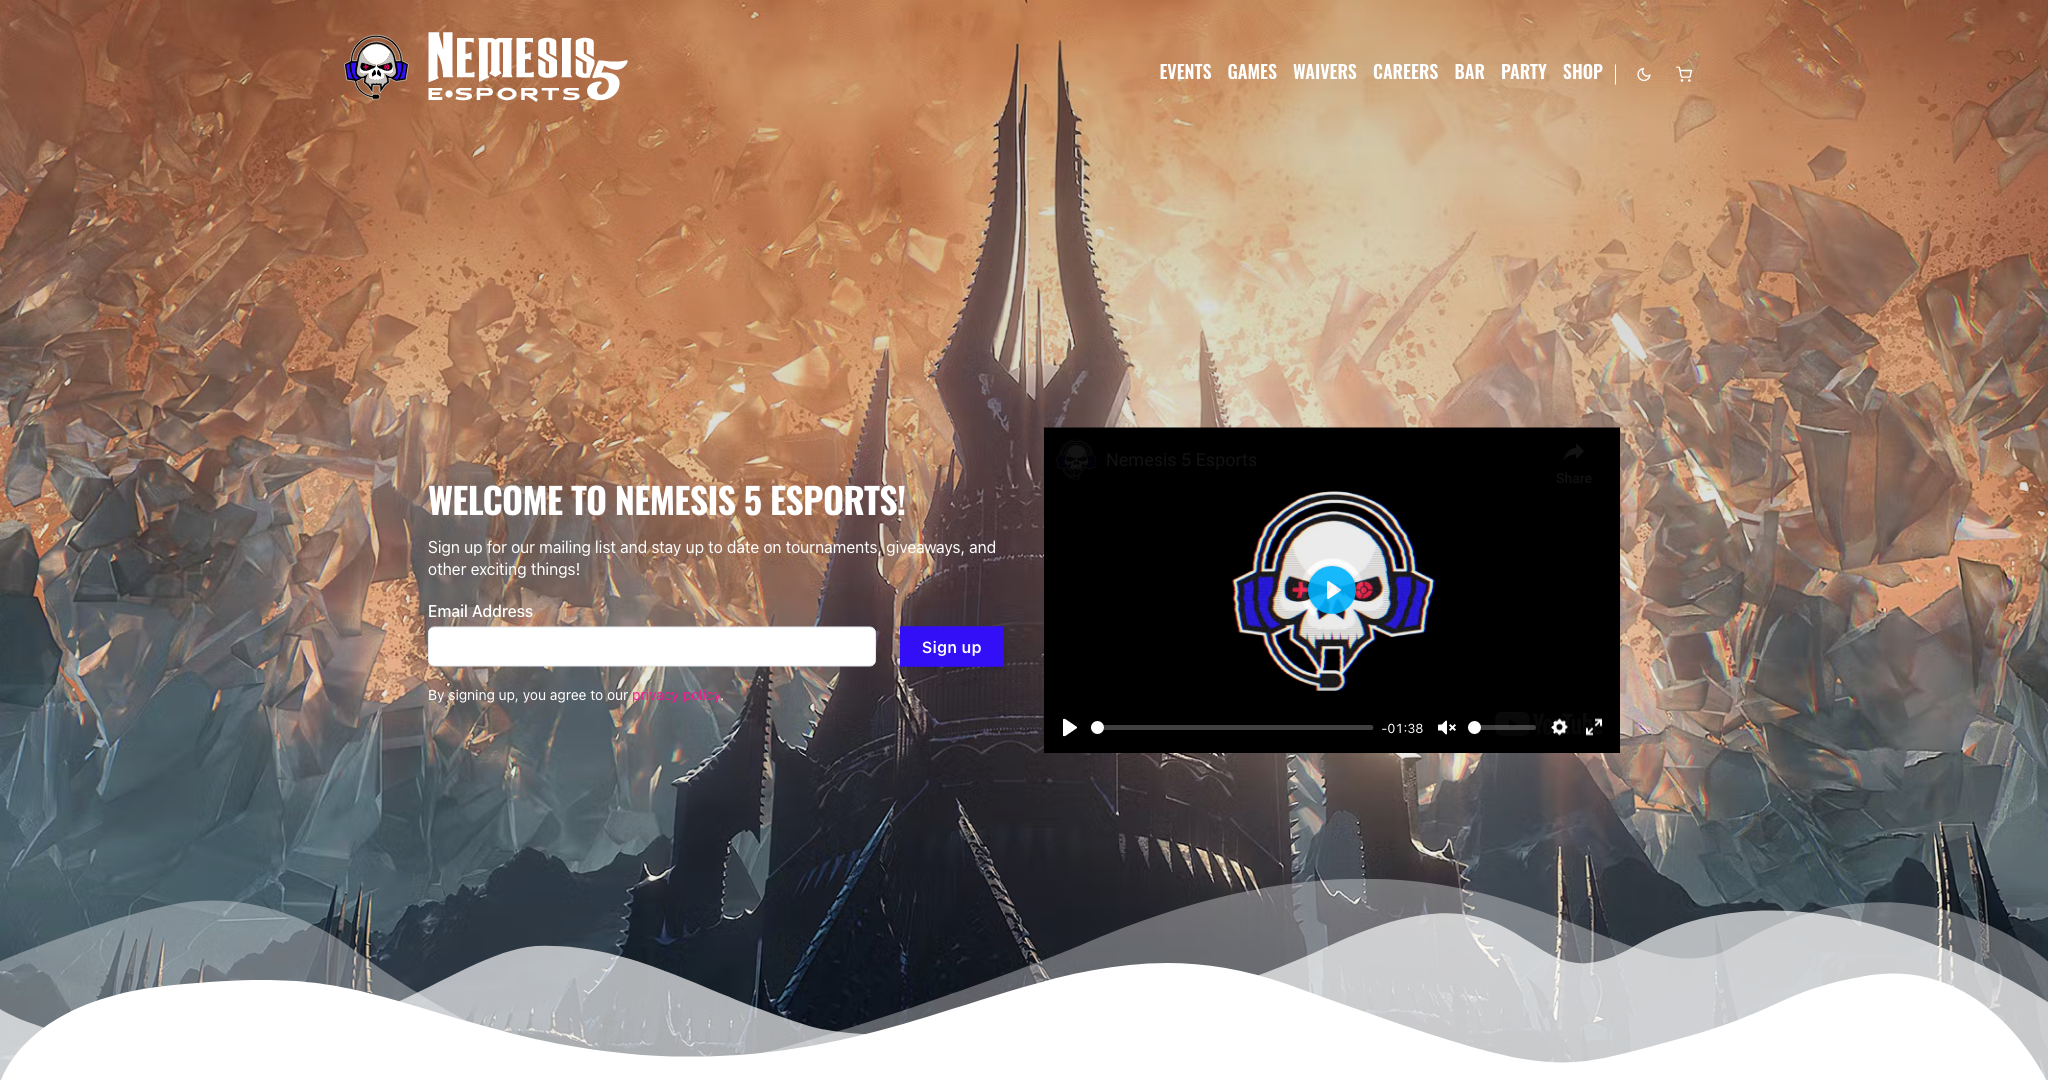 An image of Nemesis 5 Esports's website.